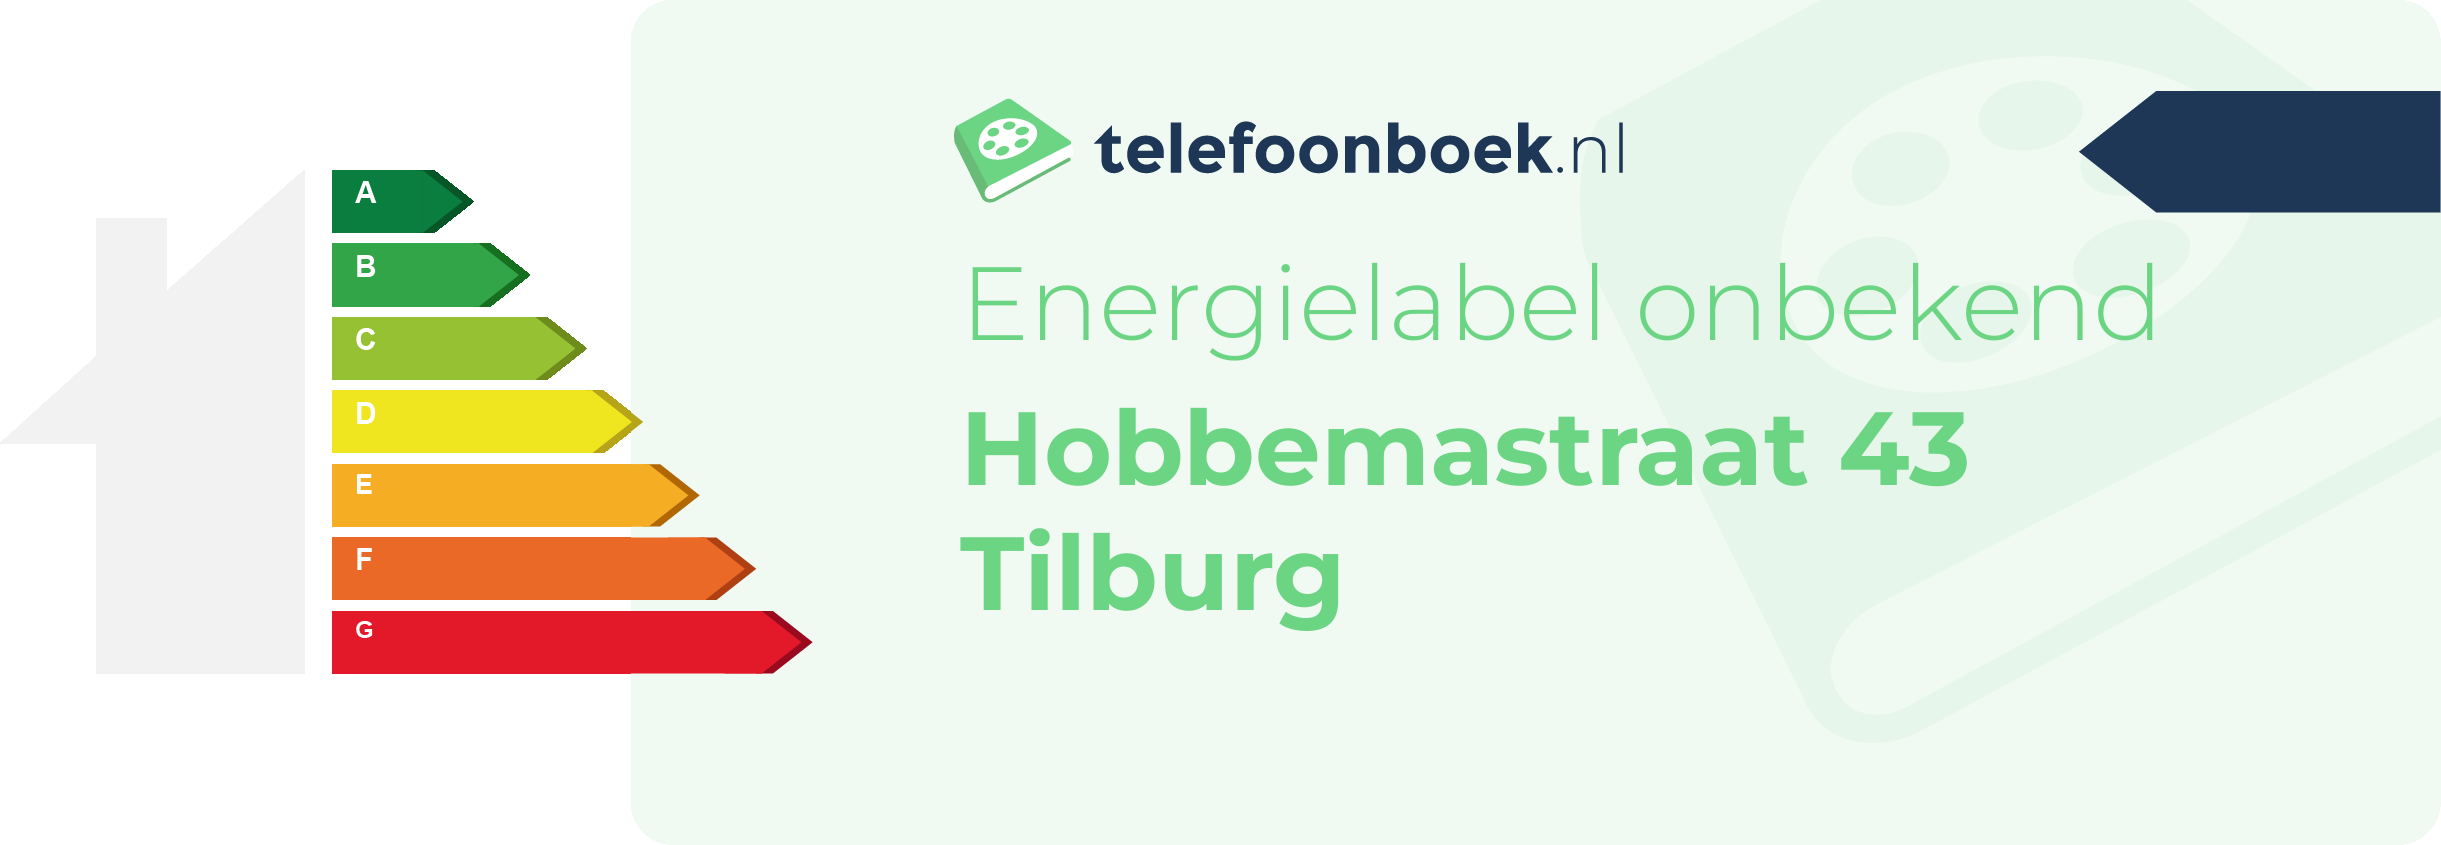 Energielabel Hobbemastraat 43 Tilburg